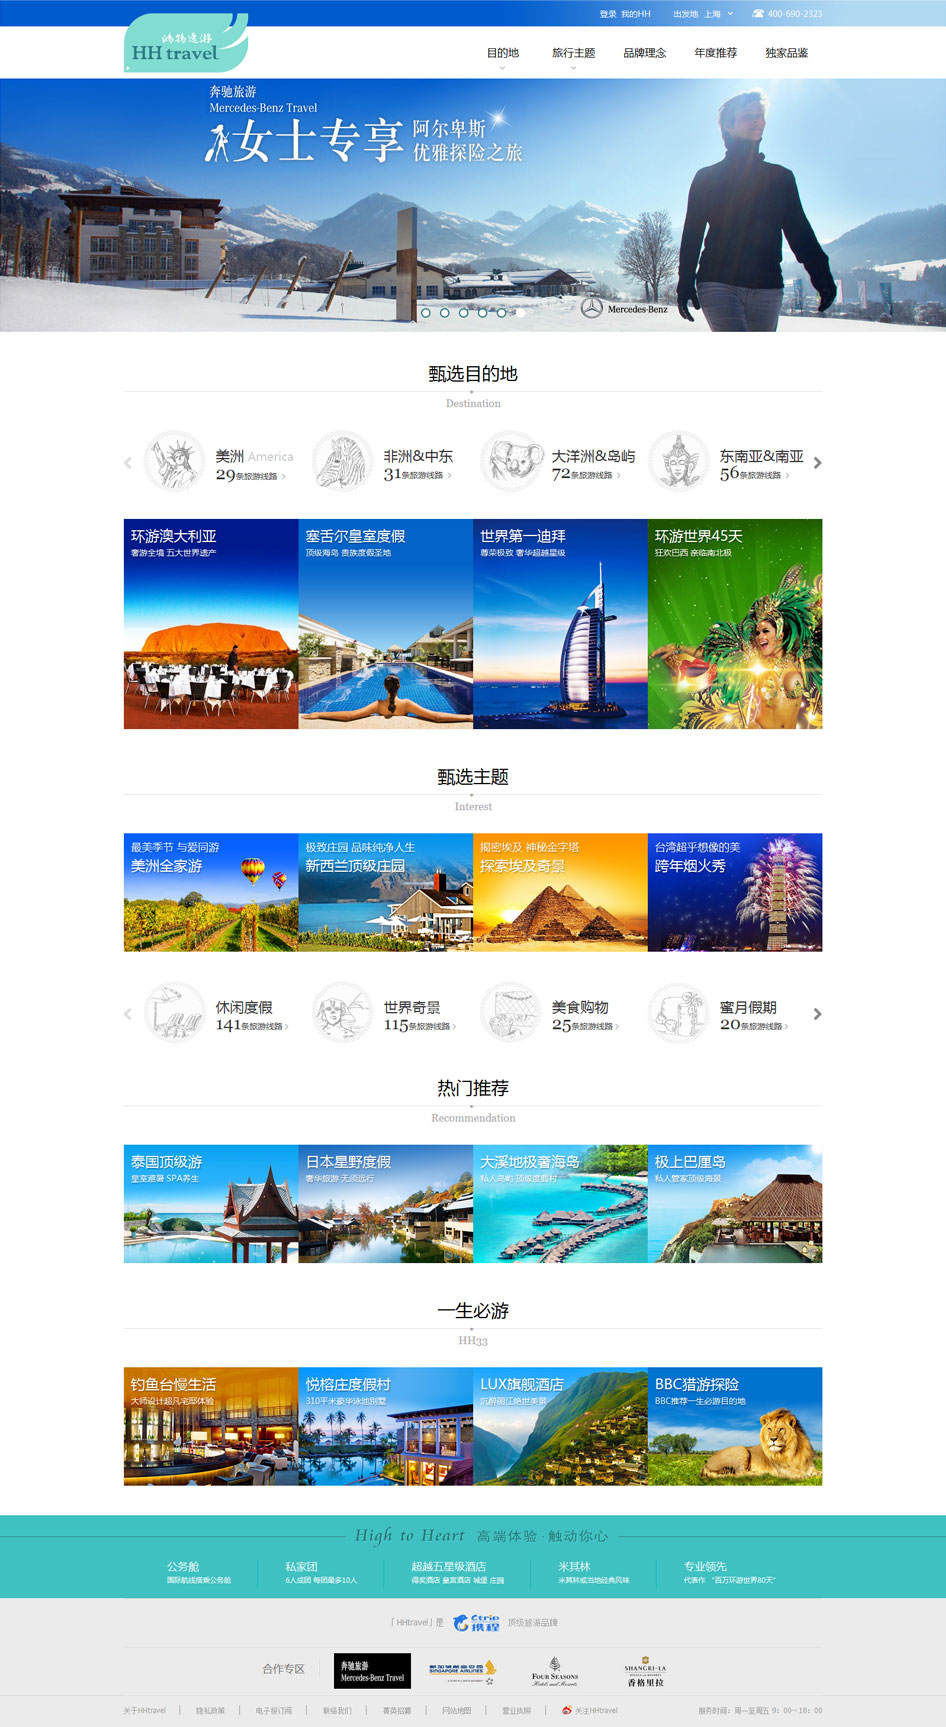 上海网站制作打造鸿鹄逸游创意旅游网站